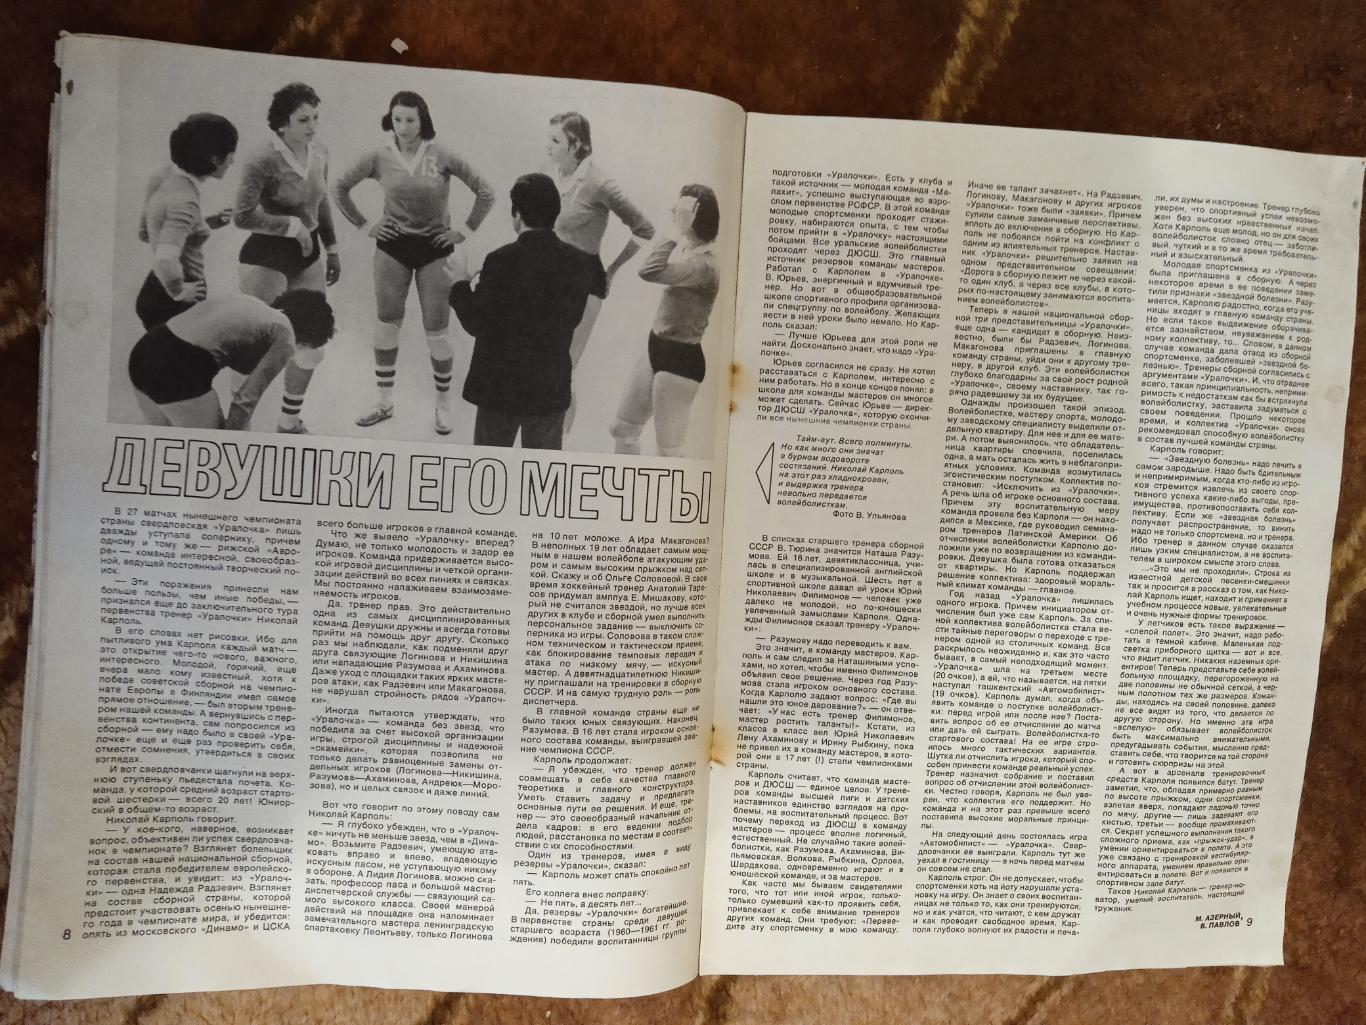 Журнал.Спортивные игры № 8 1978 г. Футбол,хоккей,волейбол,регби.ЧМ 78.Аргентина. 3